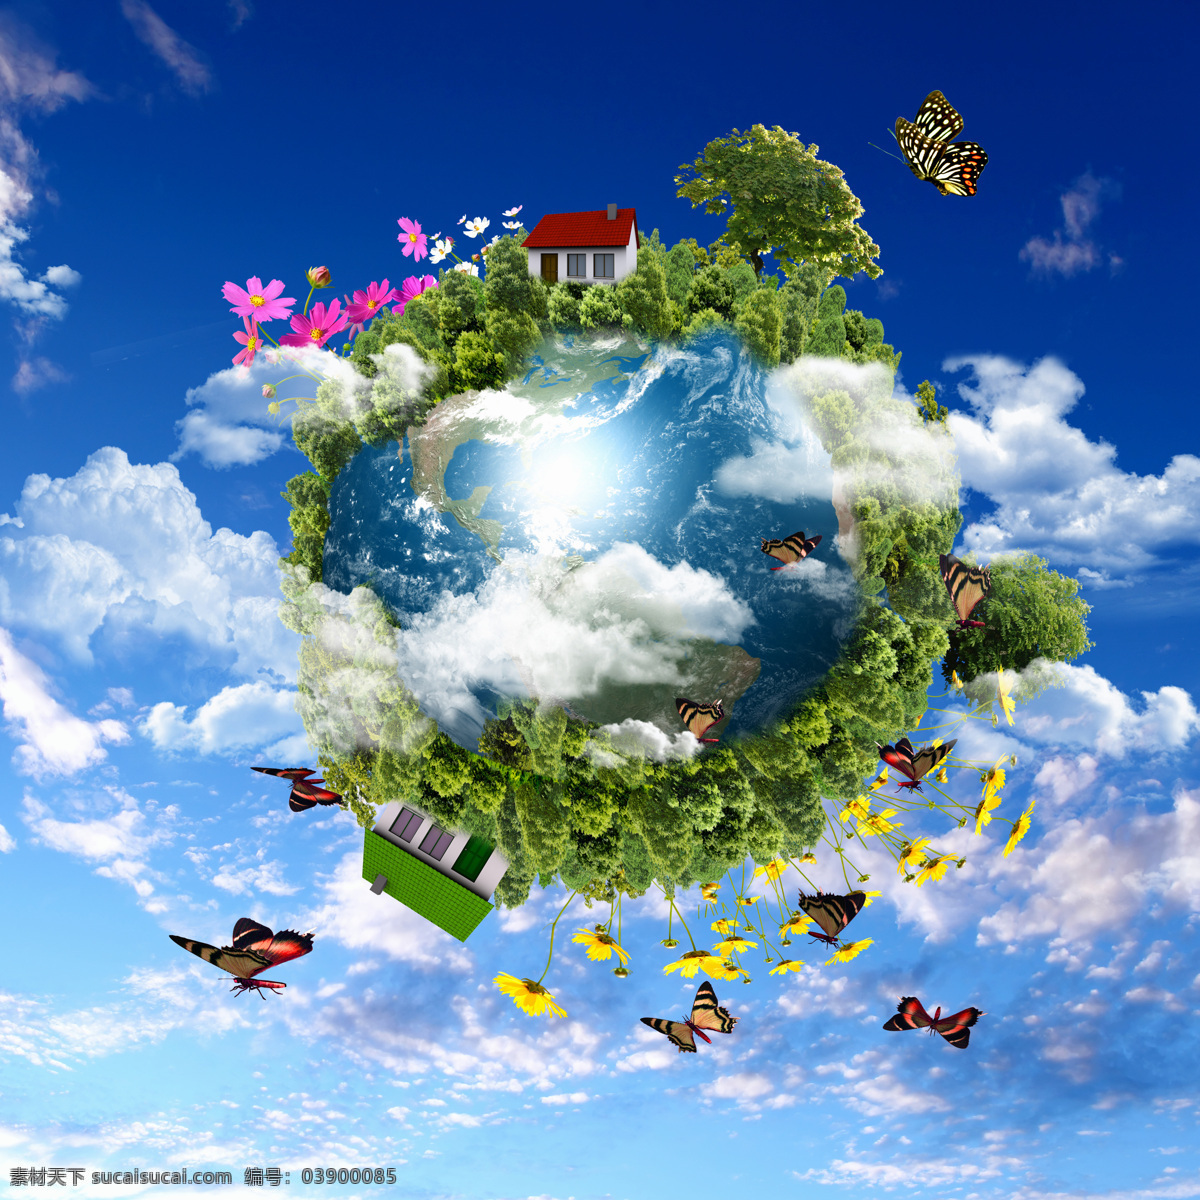 蓝色 地球 图 地球表面 蝴蝶 树 森林 房子 花朵 天空 白云 环保图片 宣传图 高清图 地球图片 环境家居